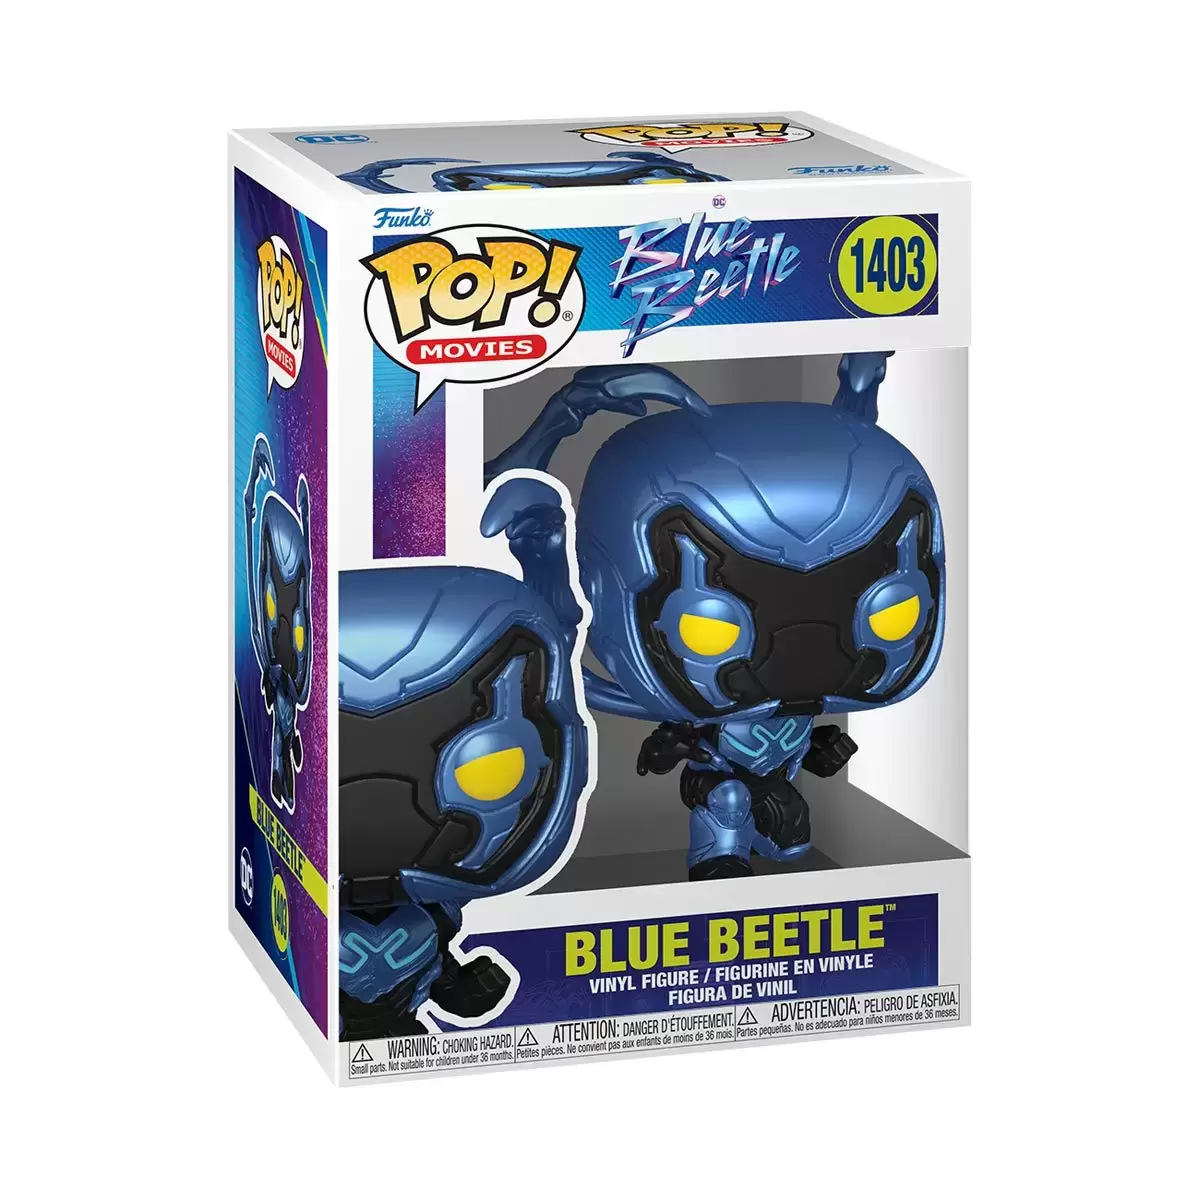 POP! Movies - Blue Beetle - Blue Beetle